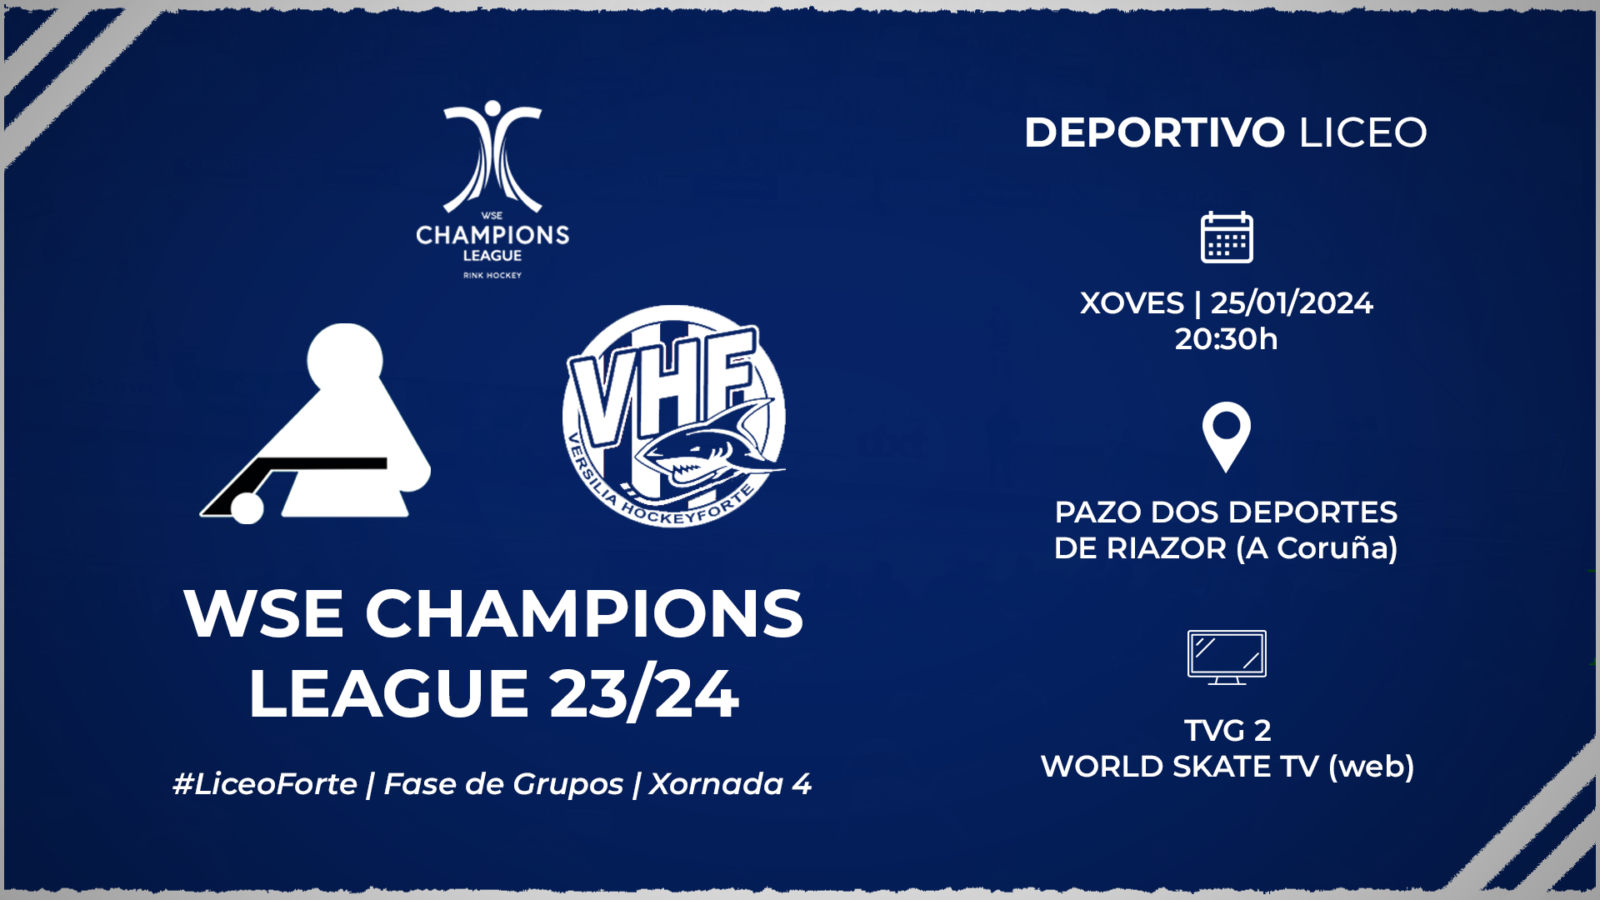 #LiceoForte | ENTRADAS para a xornada 4 da WSE Champions League 23/24